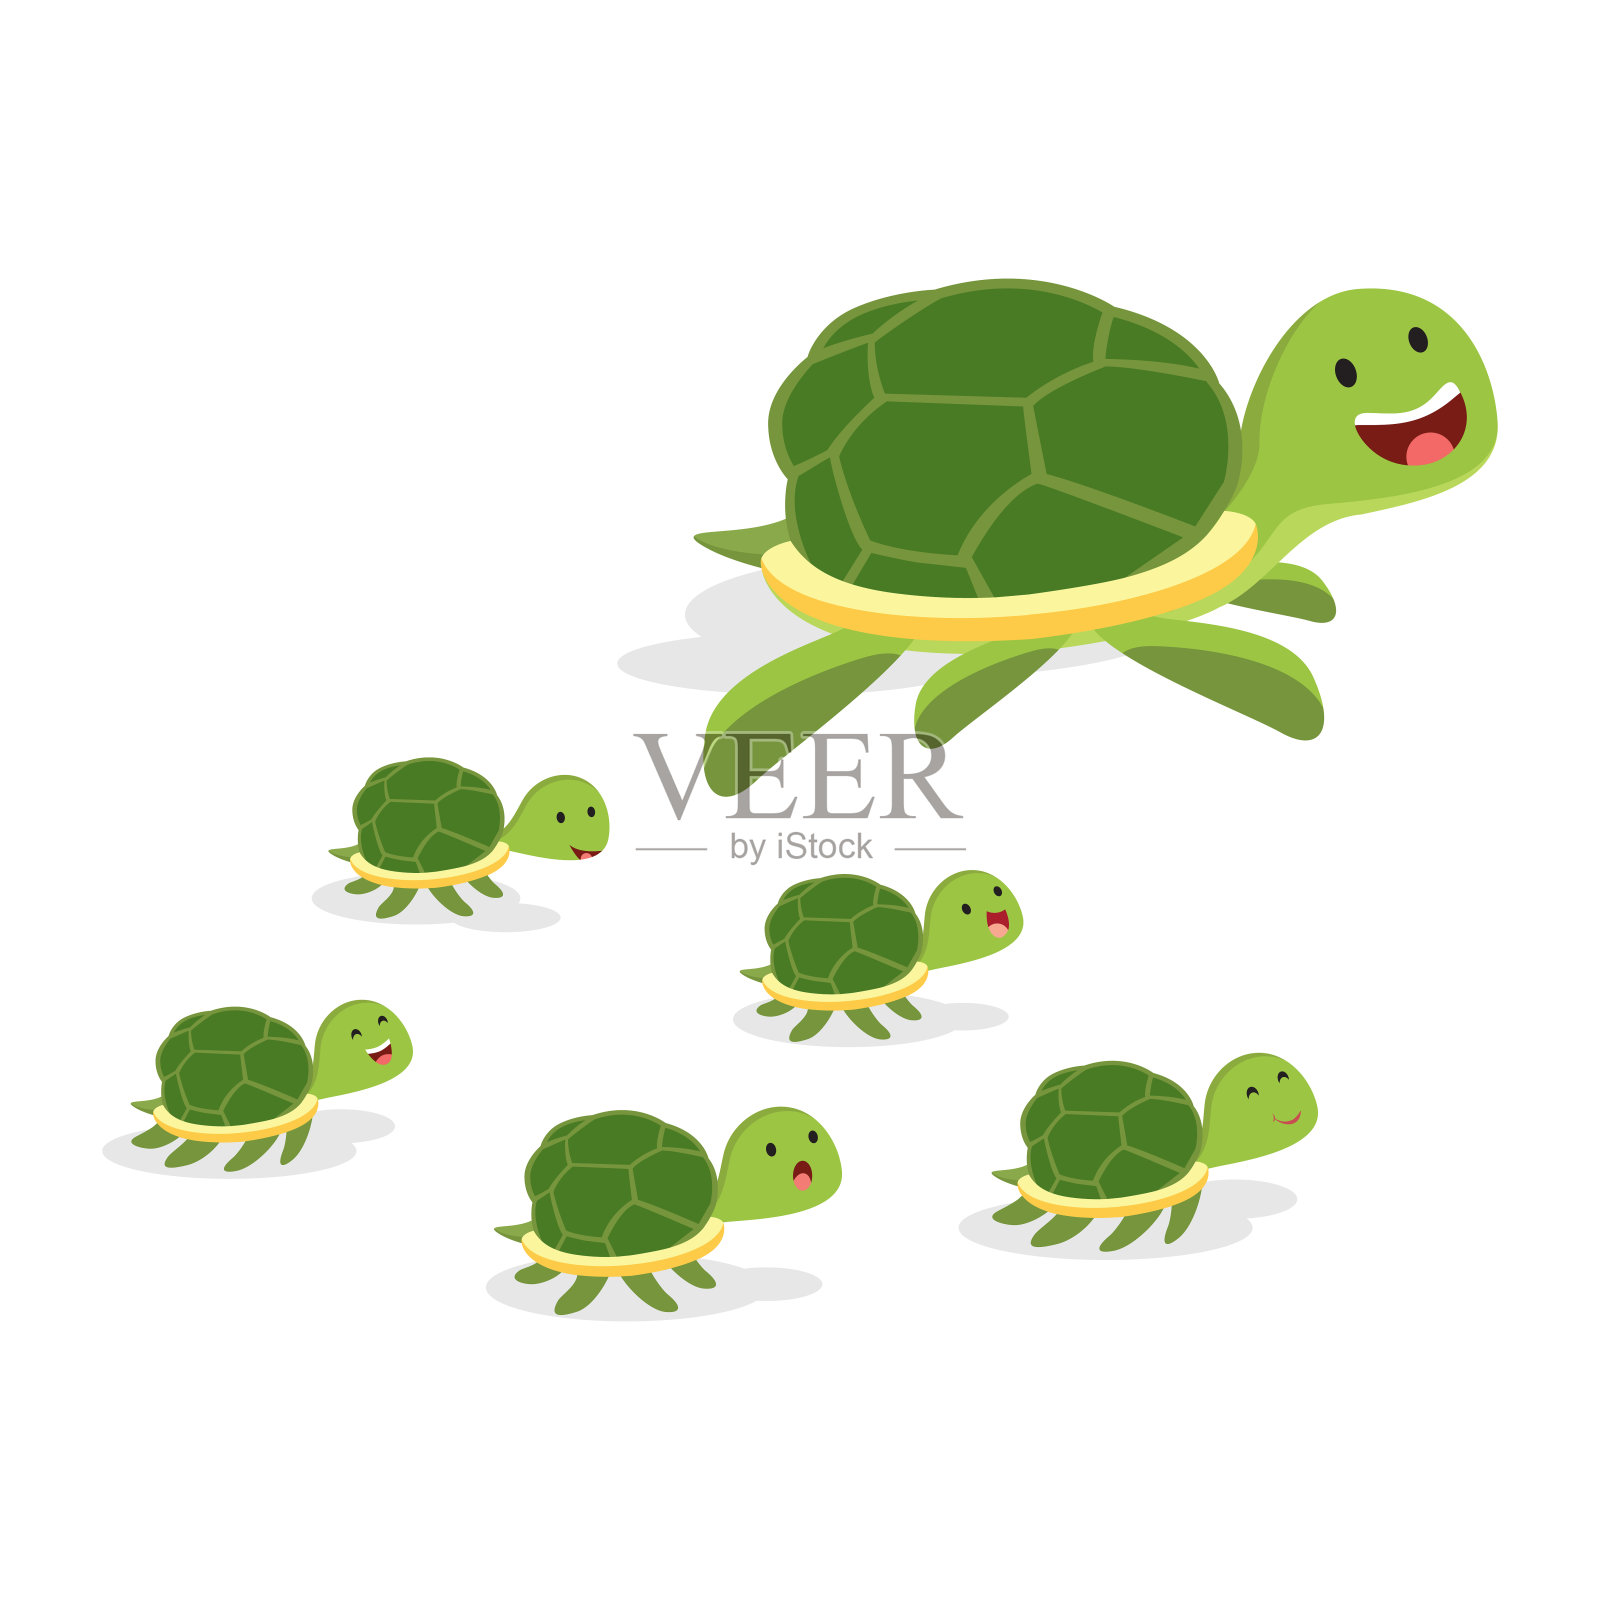 大乌龟和小乌龟插画图片素材